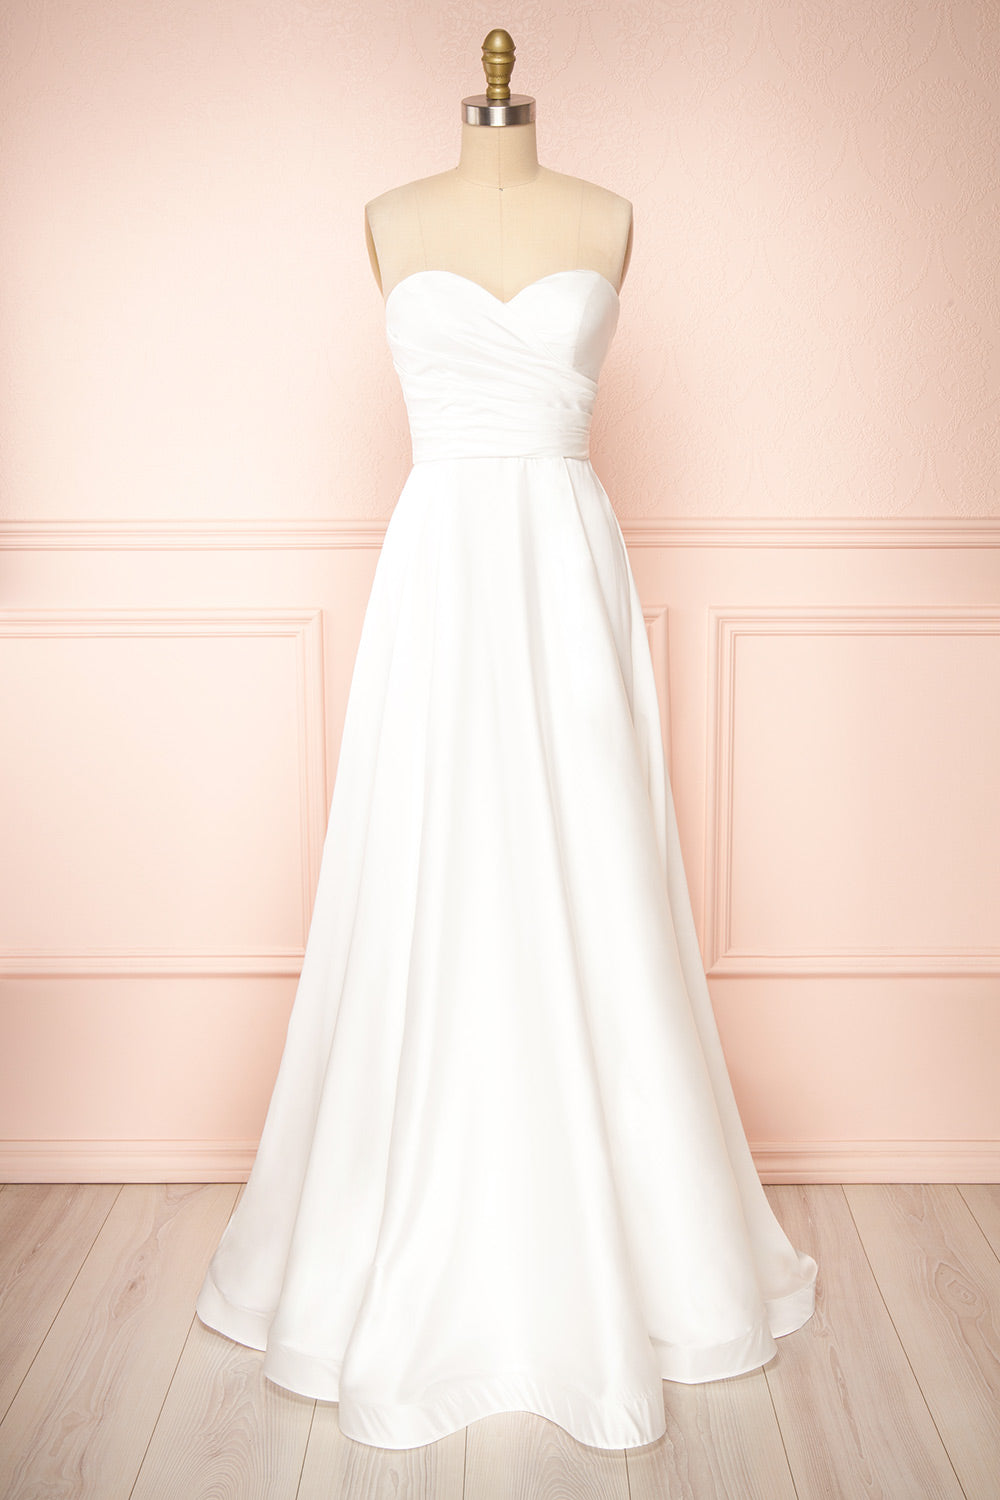 Ariane White Strapless Bridal Dress | Boudoir 1861 front view